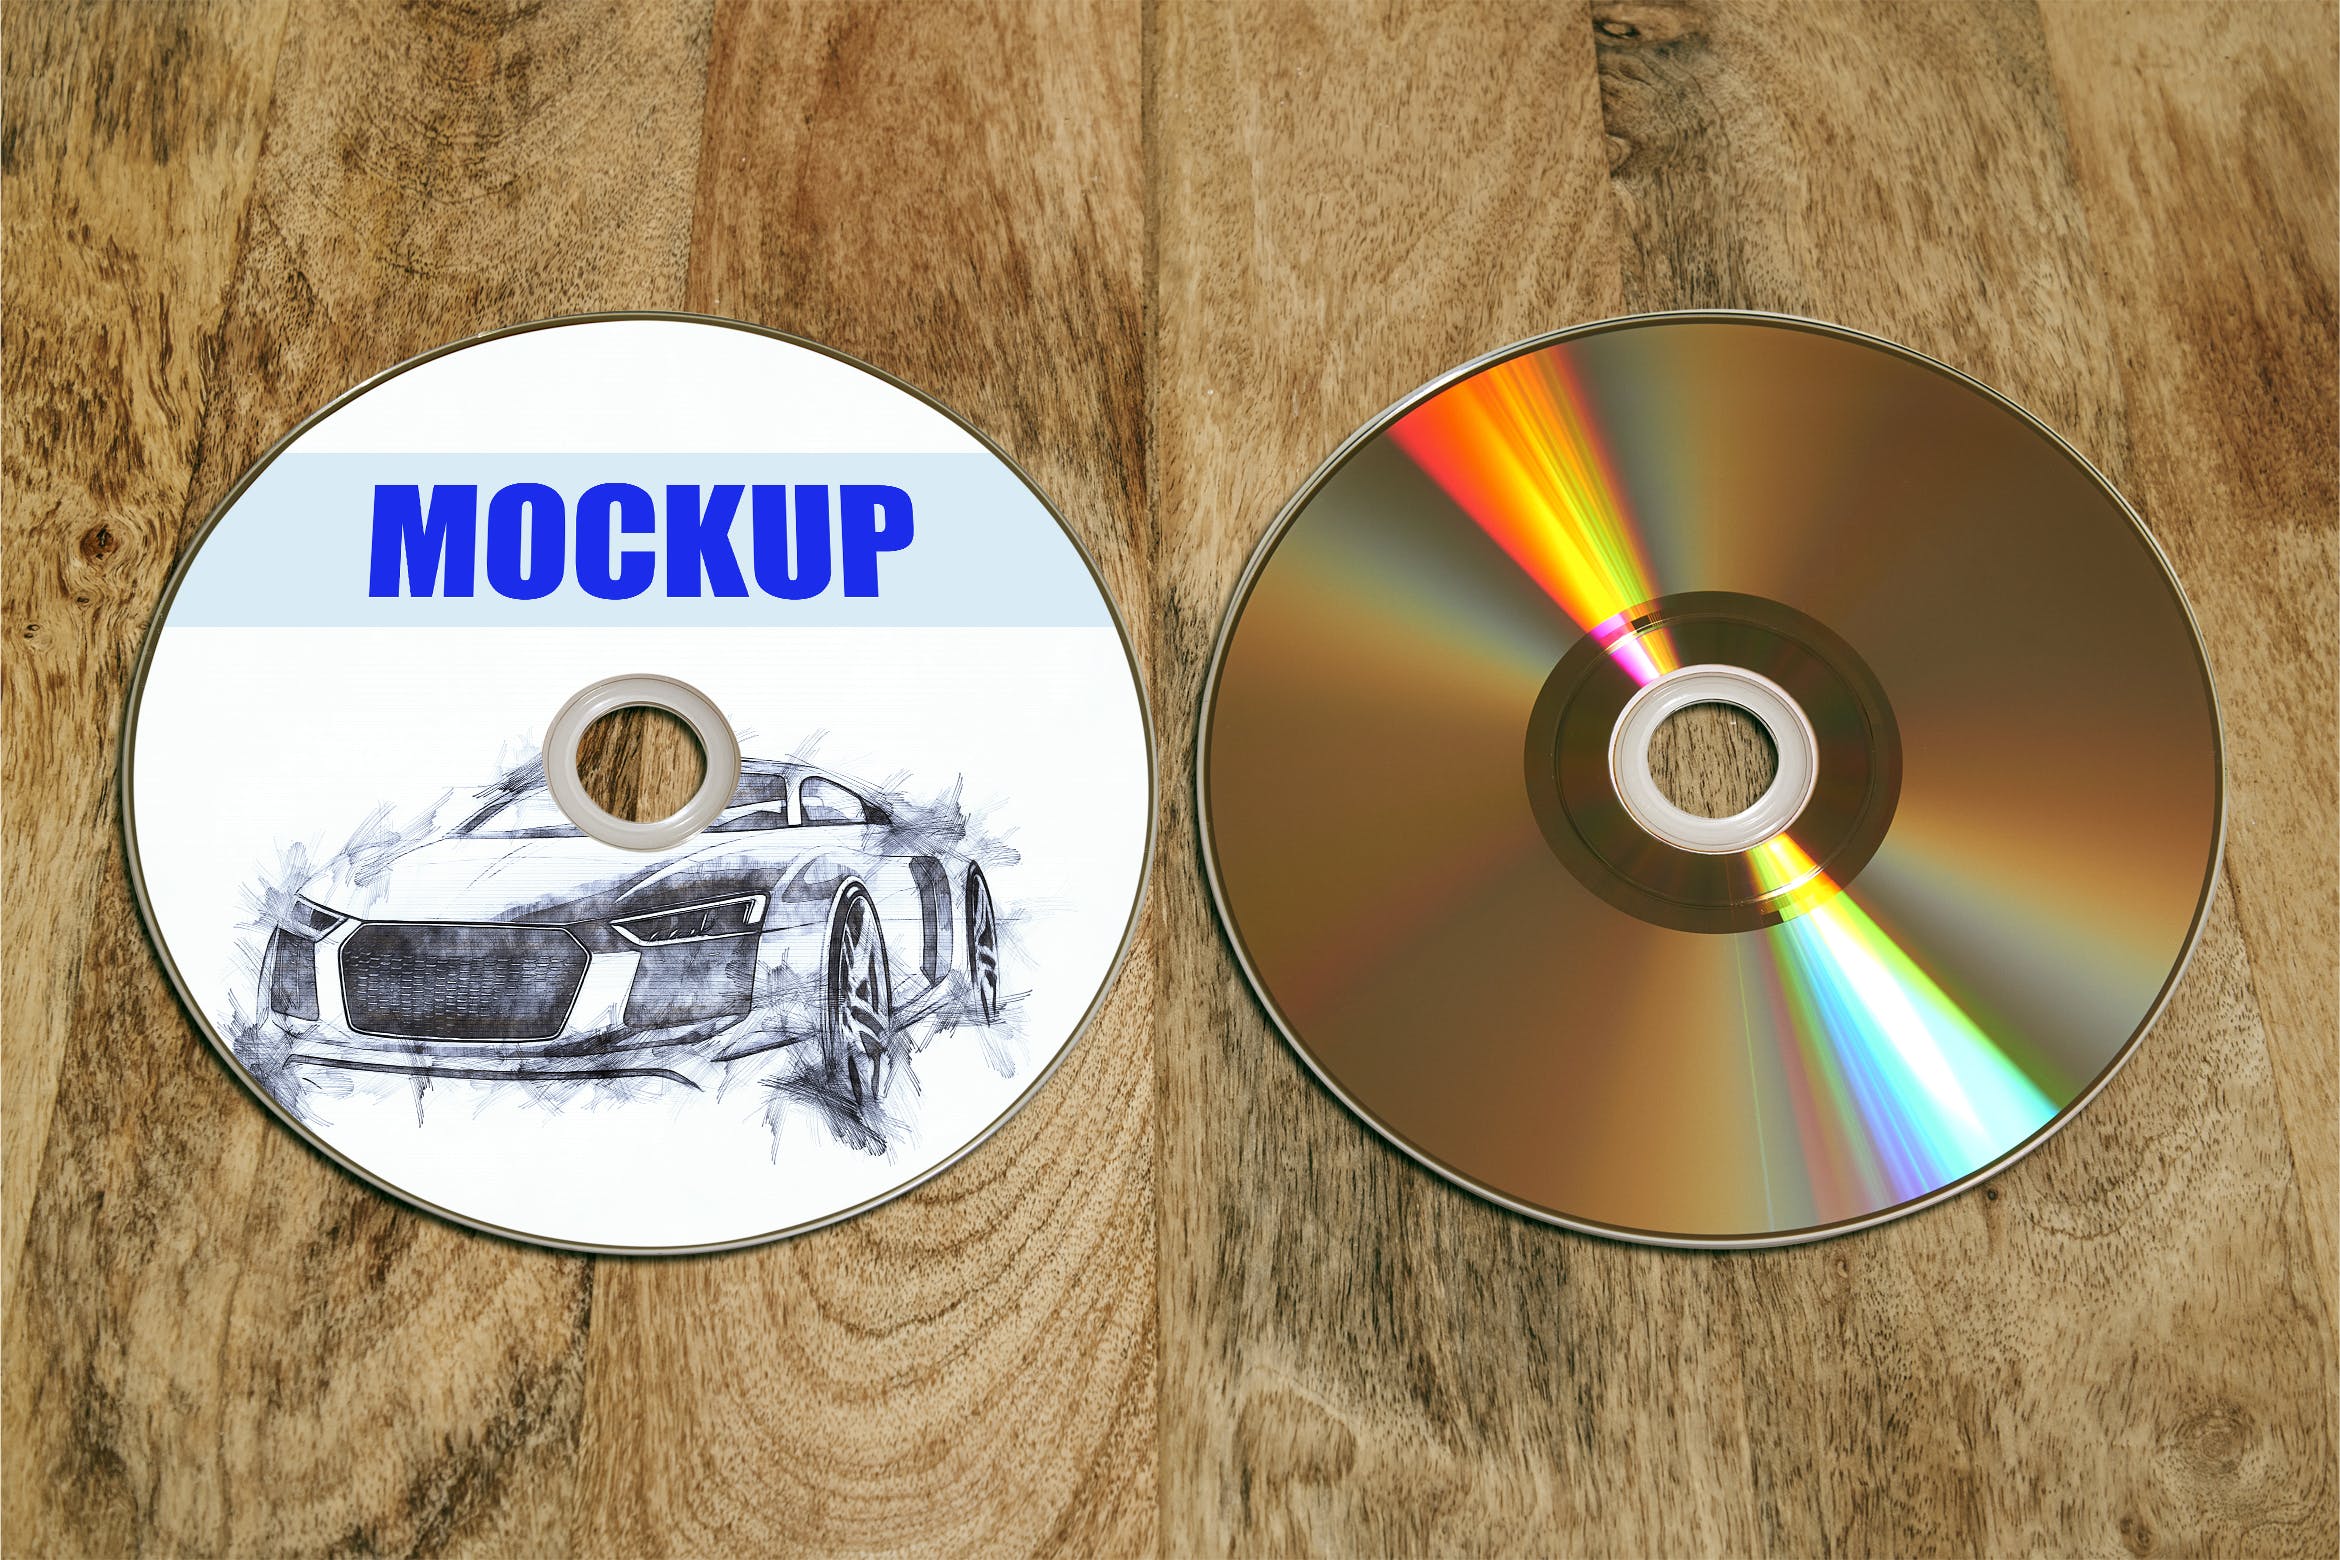 复古风格DVD/CD封面设计效果图样机 Recto_Verso- Dvd-Cd-Disc_mockup插图